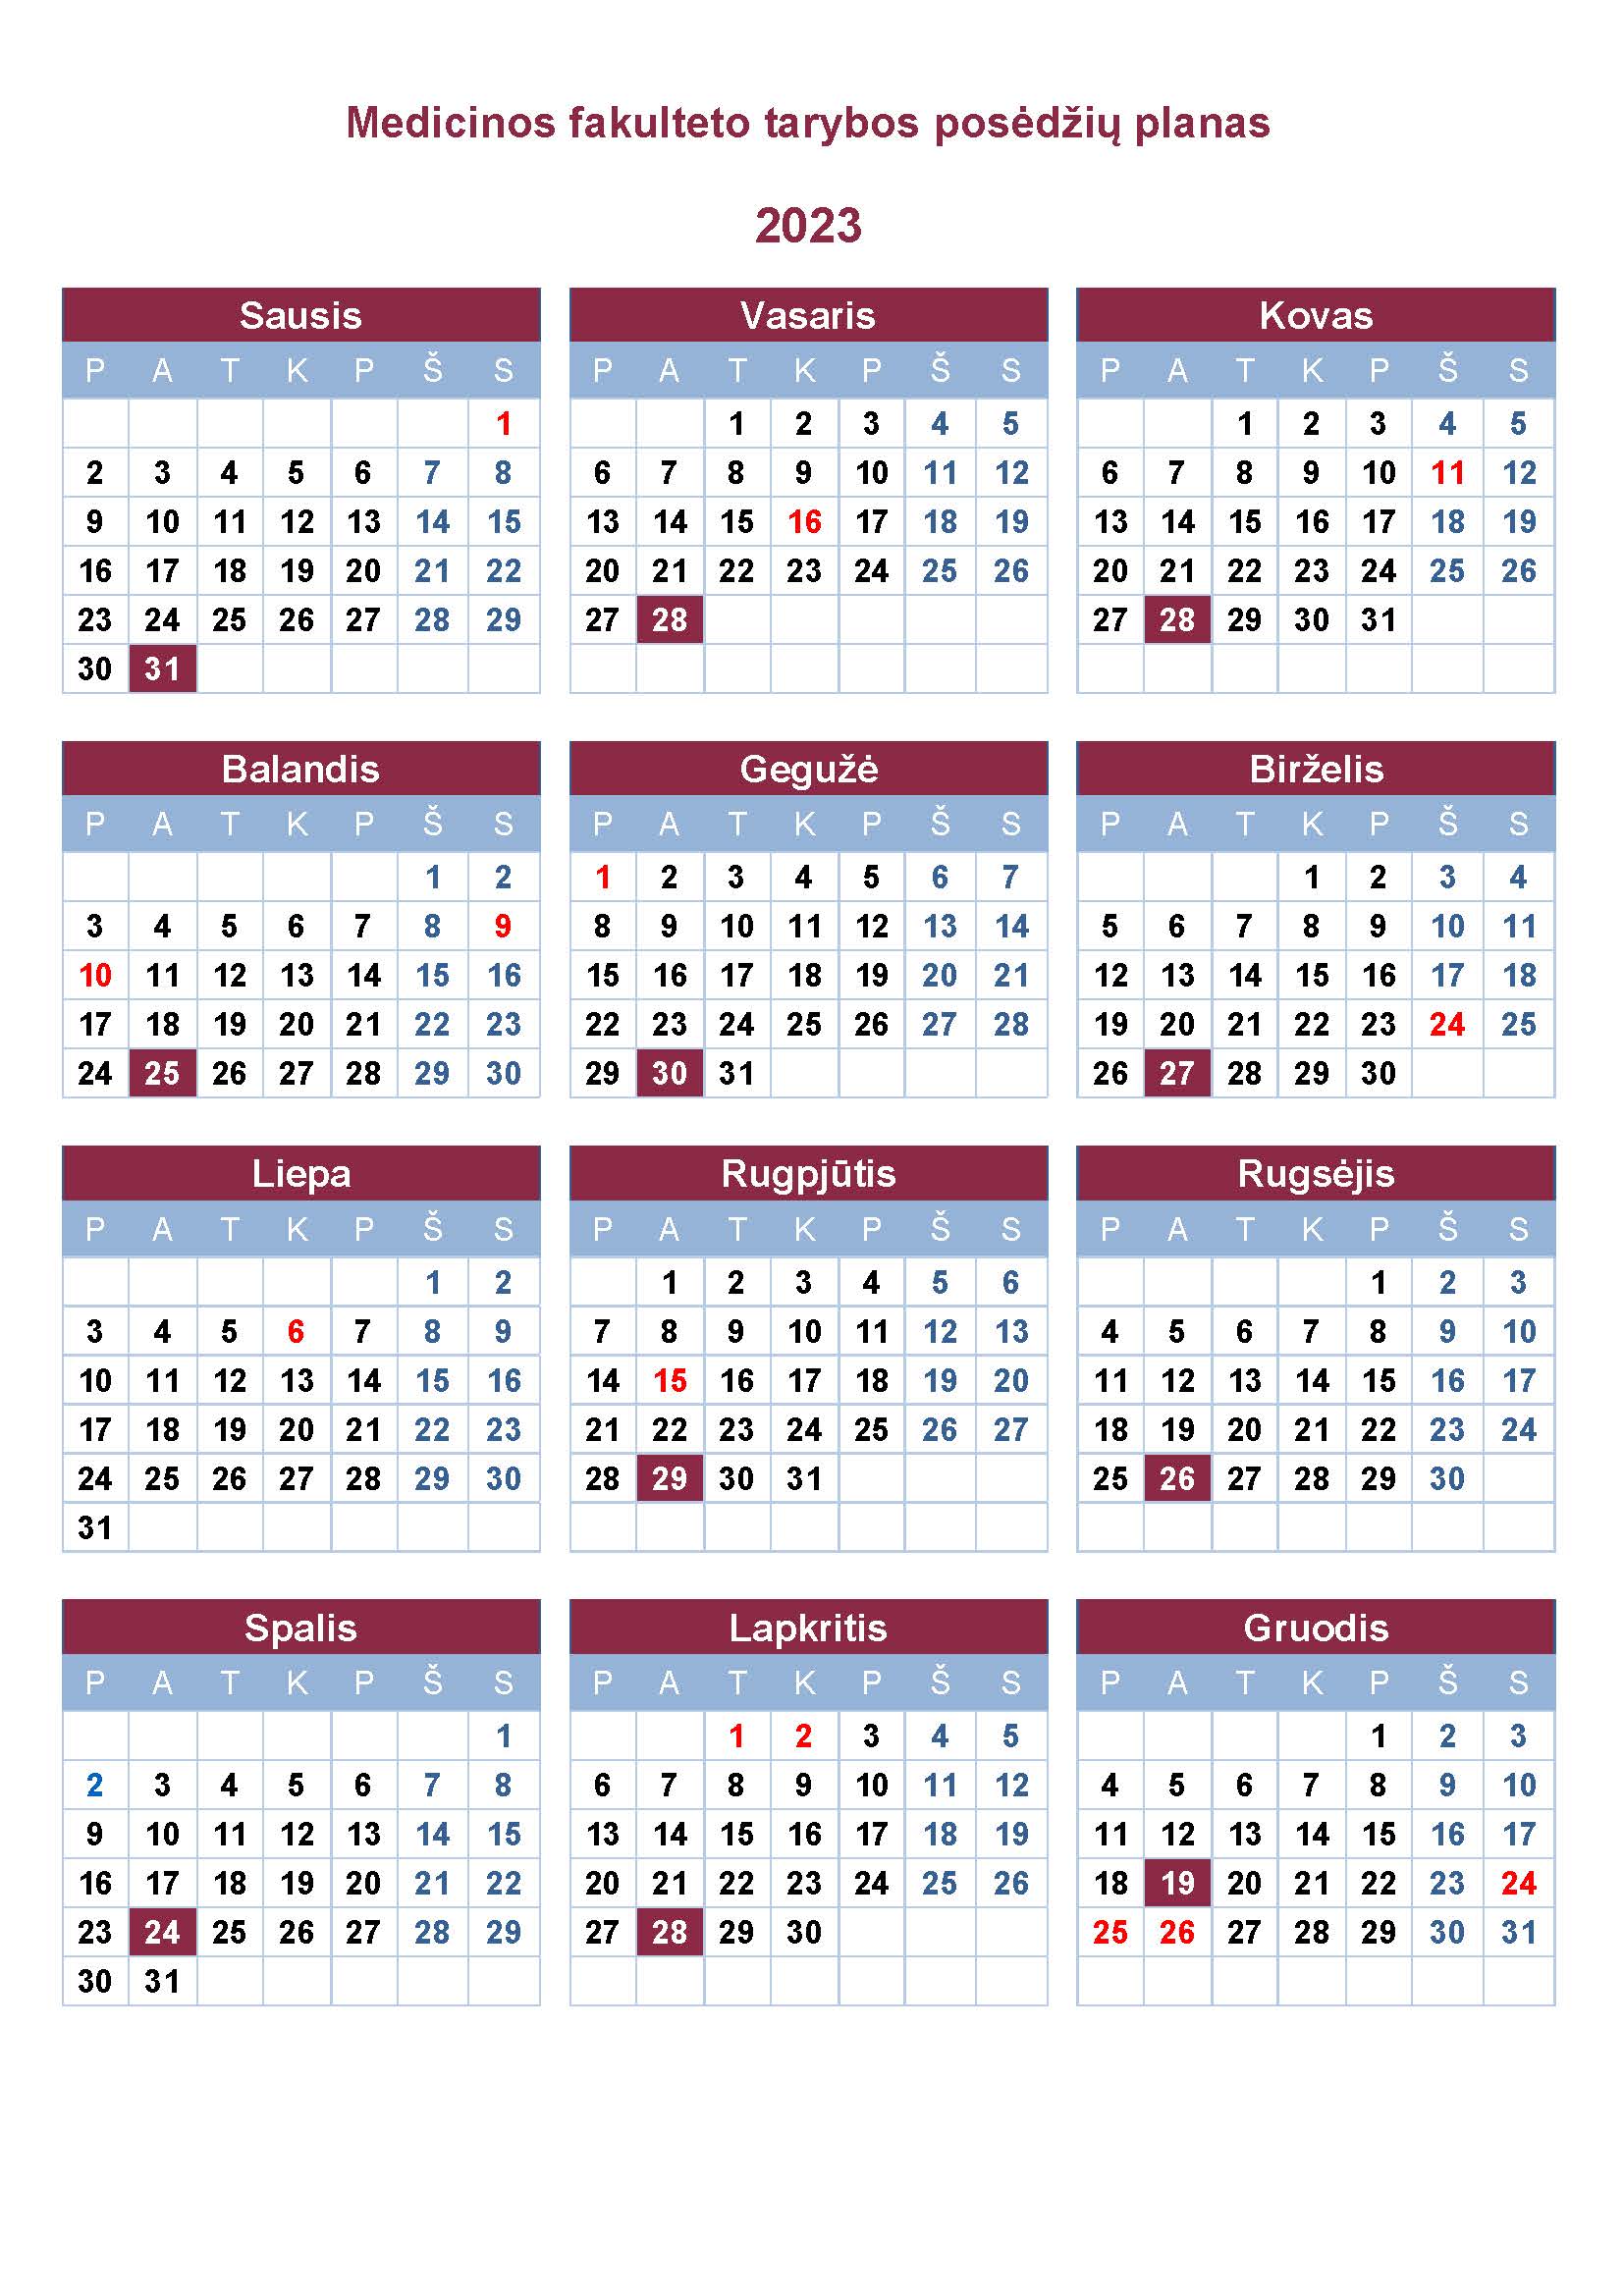 2023 metu tarybos posedziu kalendorius Page 1